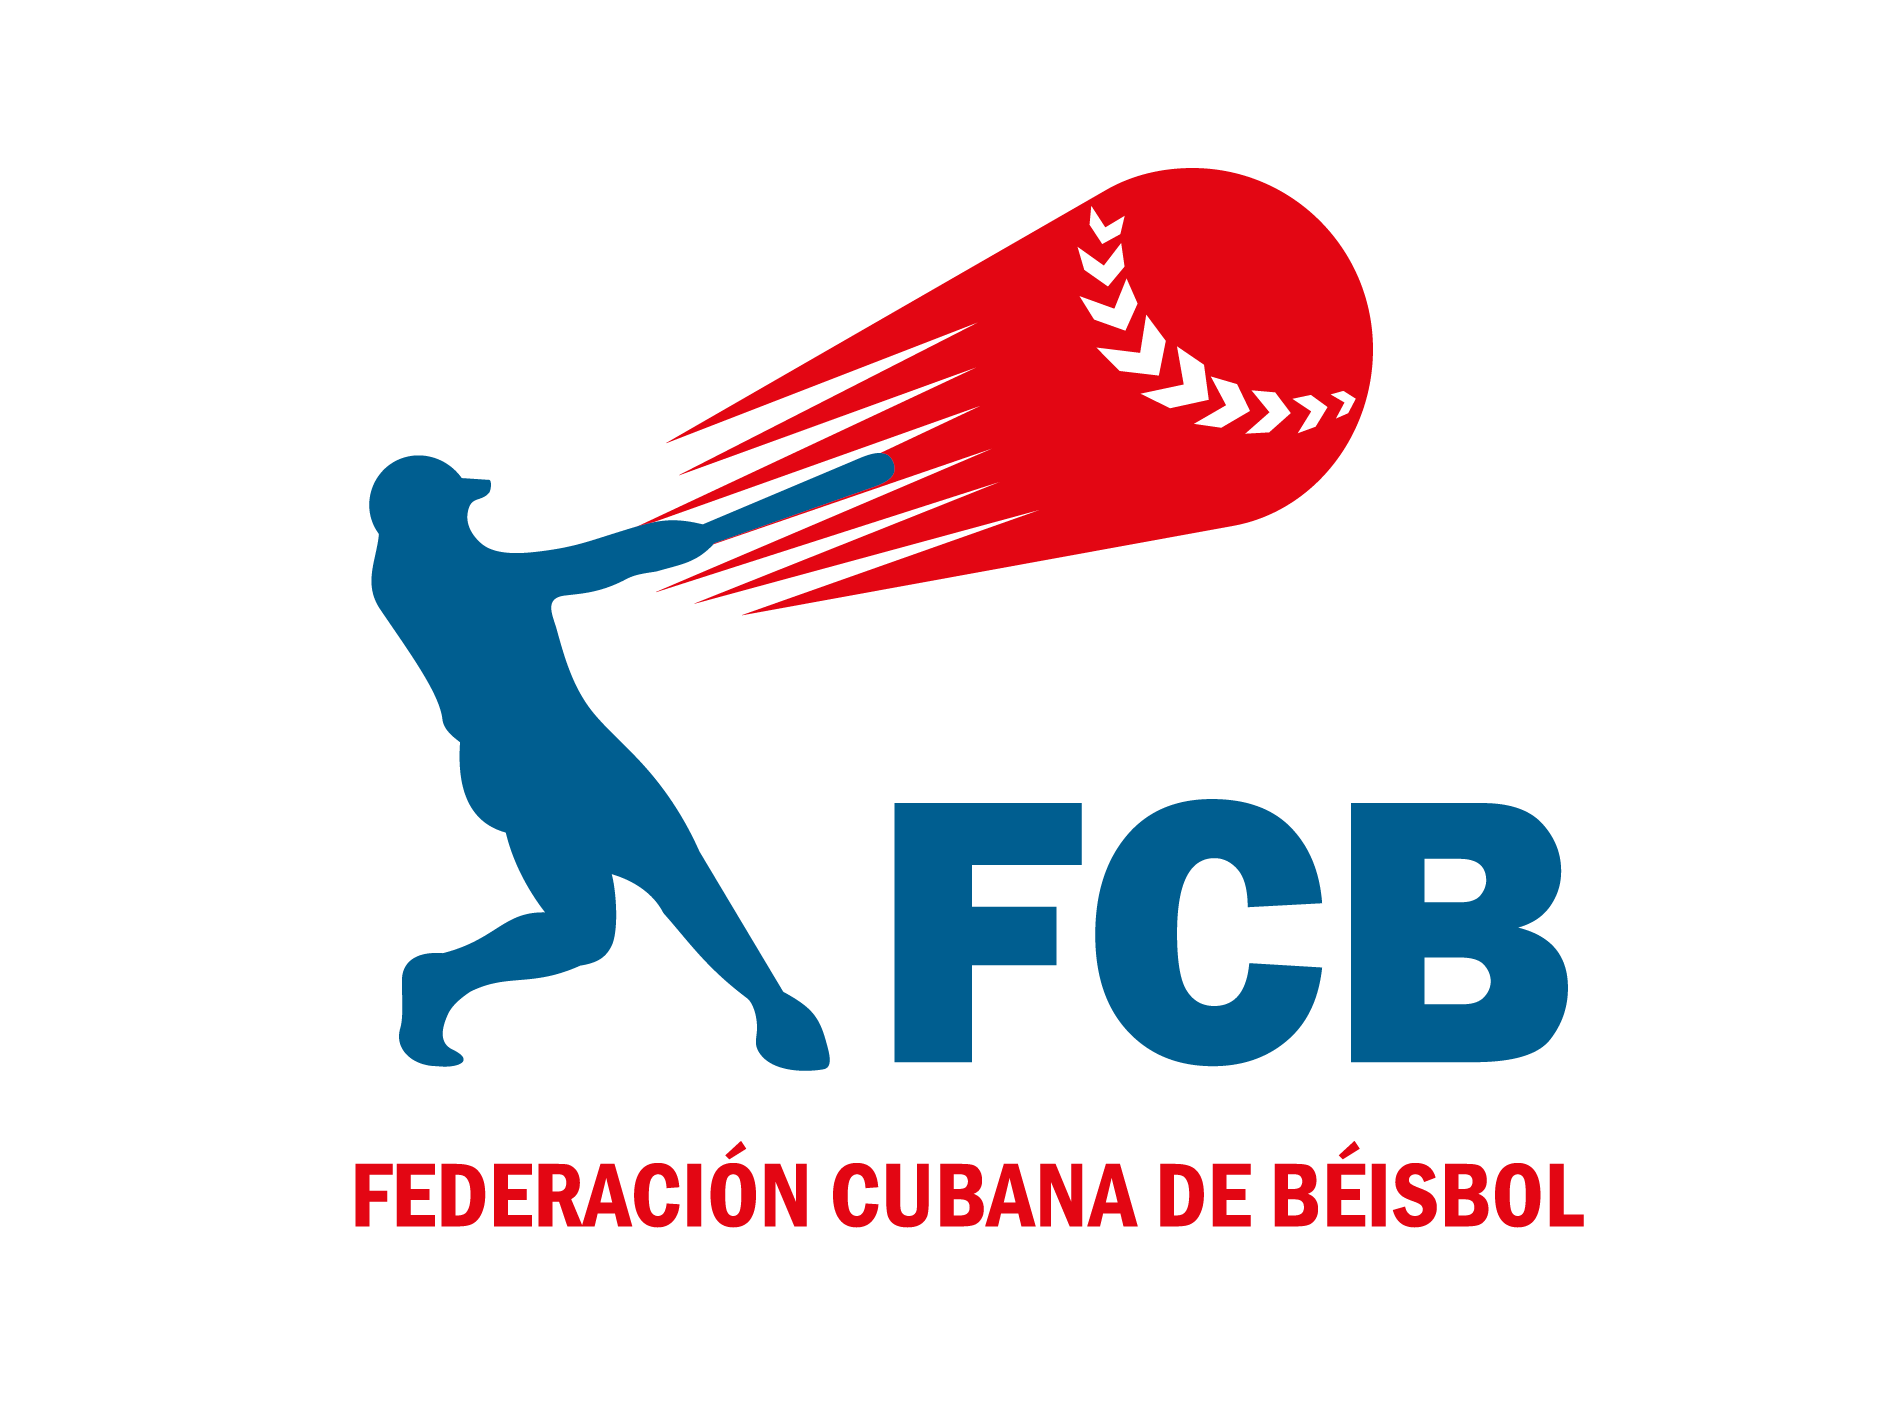 Liga Elite del Béisbol cubano, Federación Cubana de Béisbol, Cuba, pelota cubana